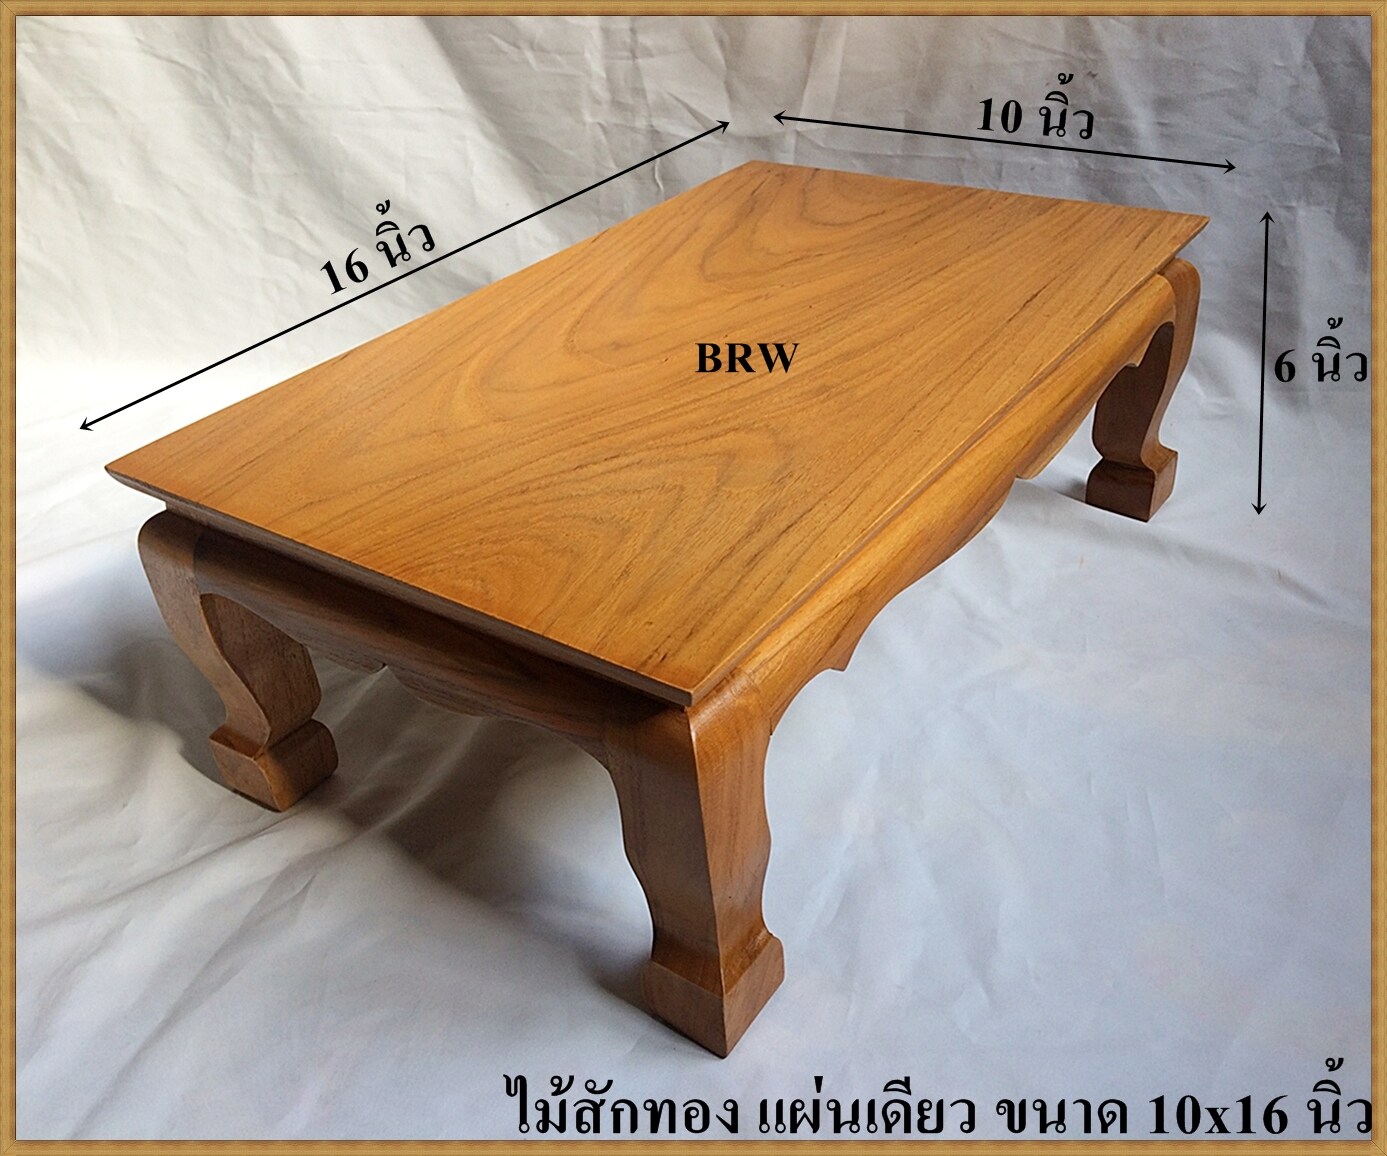 โต๊ะ โต๊ะยอด โต๊ะหมู่บูชา ฐานรองพระ ฐานรองพระไม้สัก แท่นรองพระ ตั่งวางพระ หิ้งพระ ชั้นวางพระ ไม้สัก ขาสิงห์ขนาด 10x16 นิ้ว